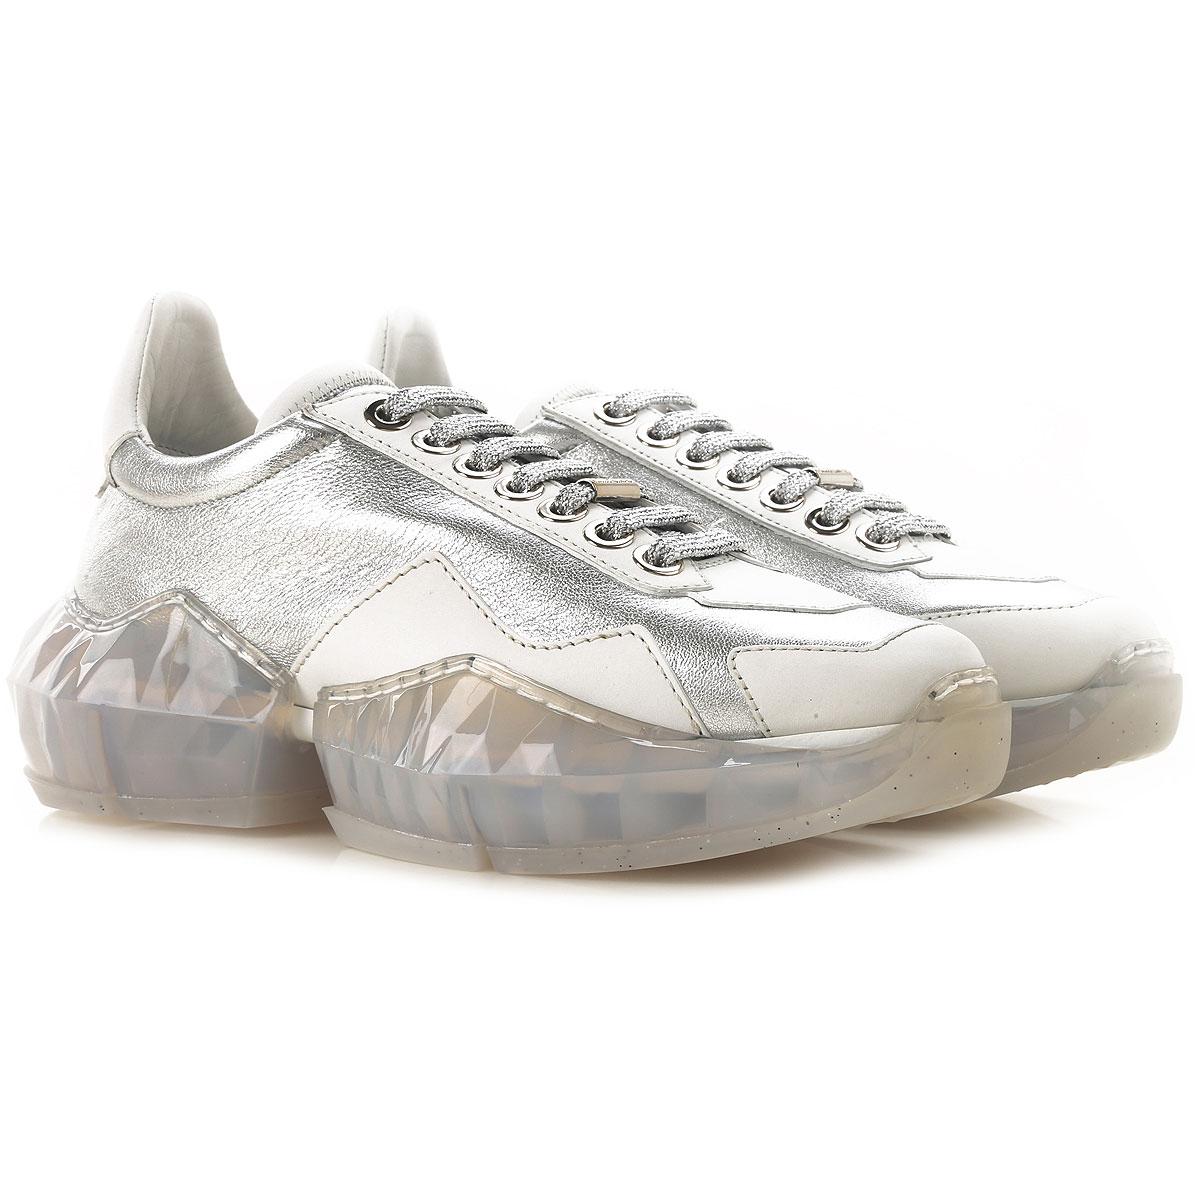 Jimmy Choo Sneakers For Women On Sale in Silver (Metallic) - Lyst